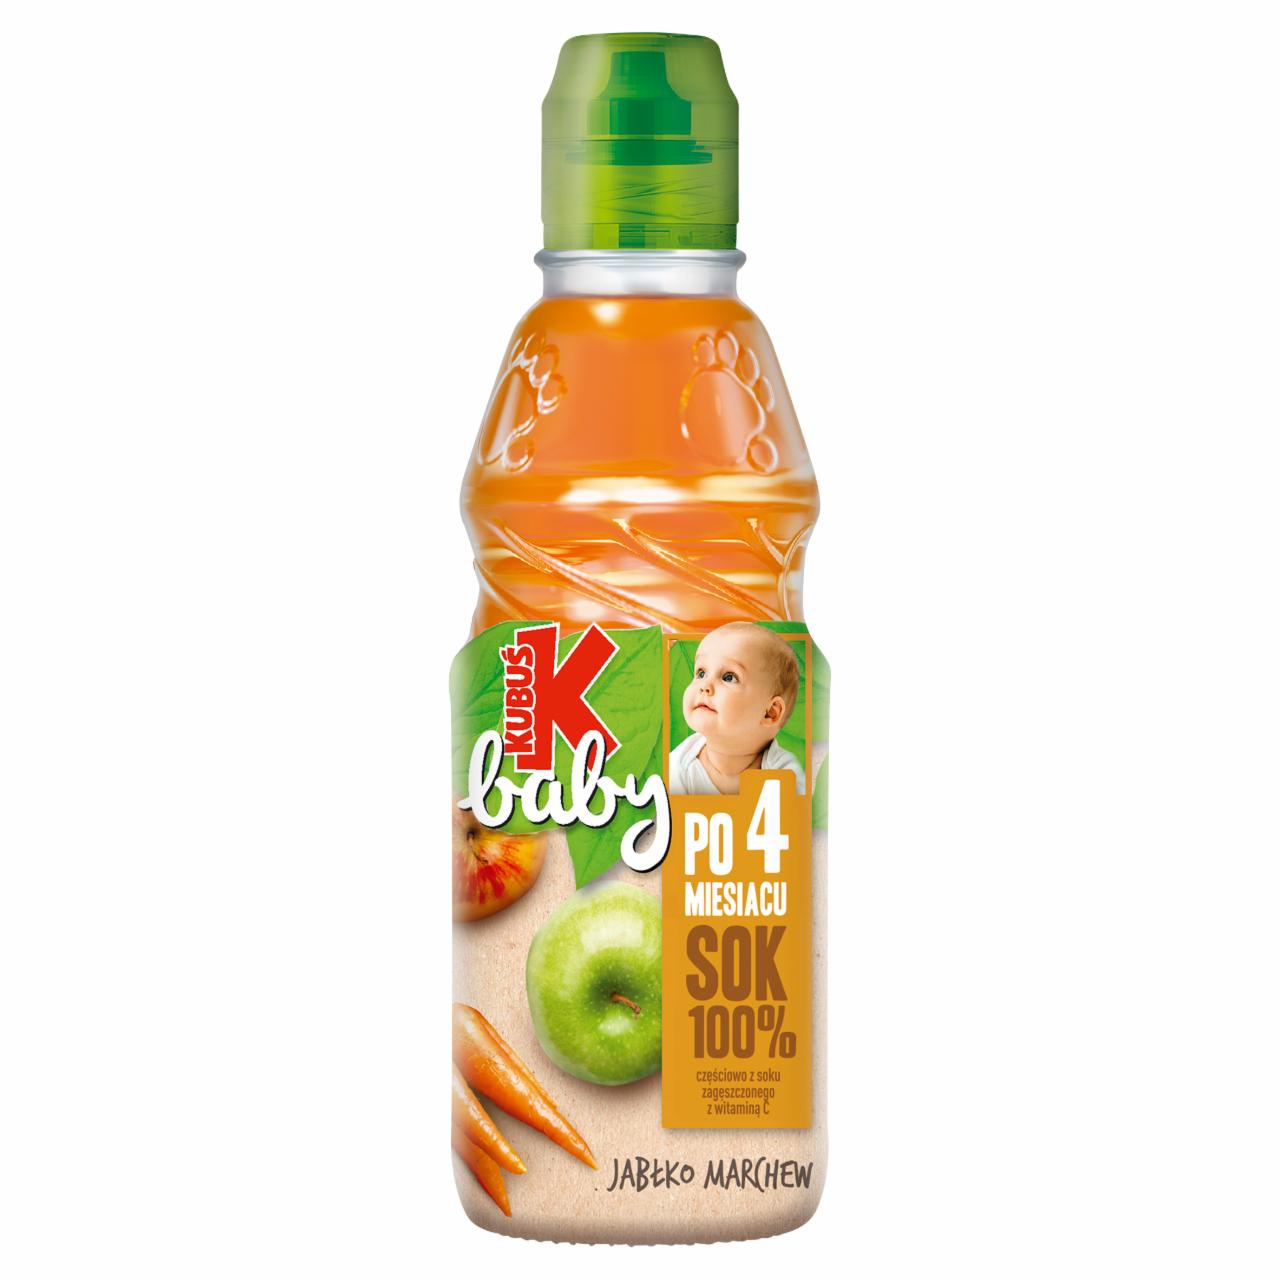 Zdjęcia - Kubuś Baby Sok 100% po 4 miesiącu jabłko marchew 300 ml